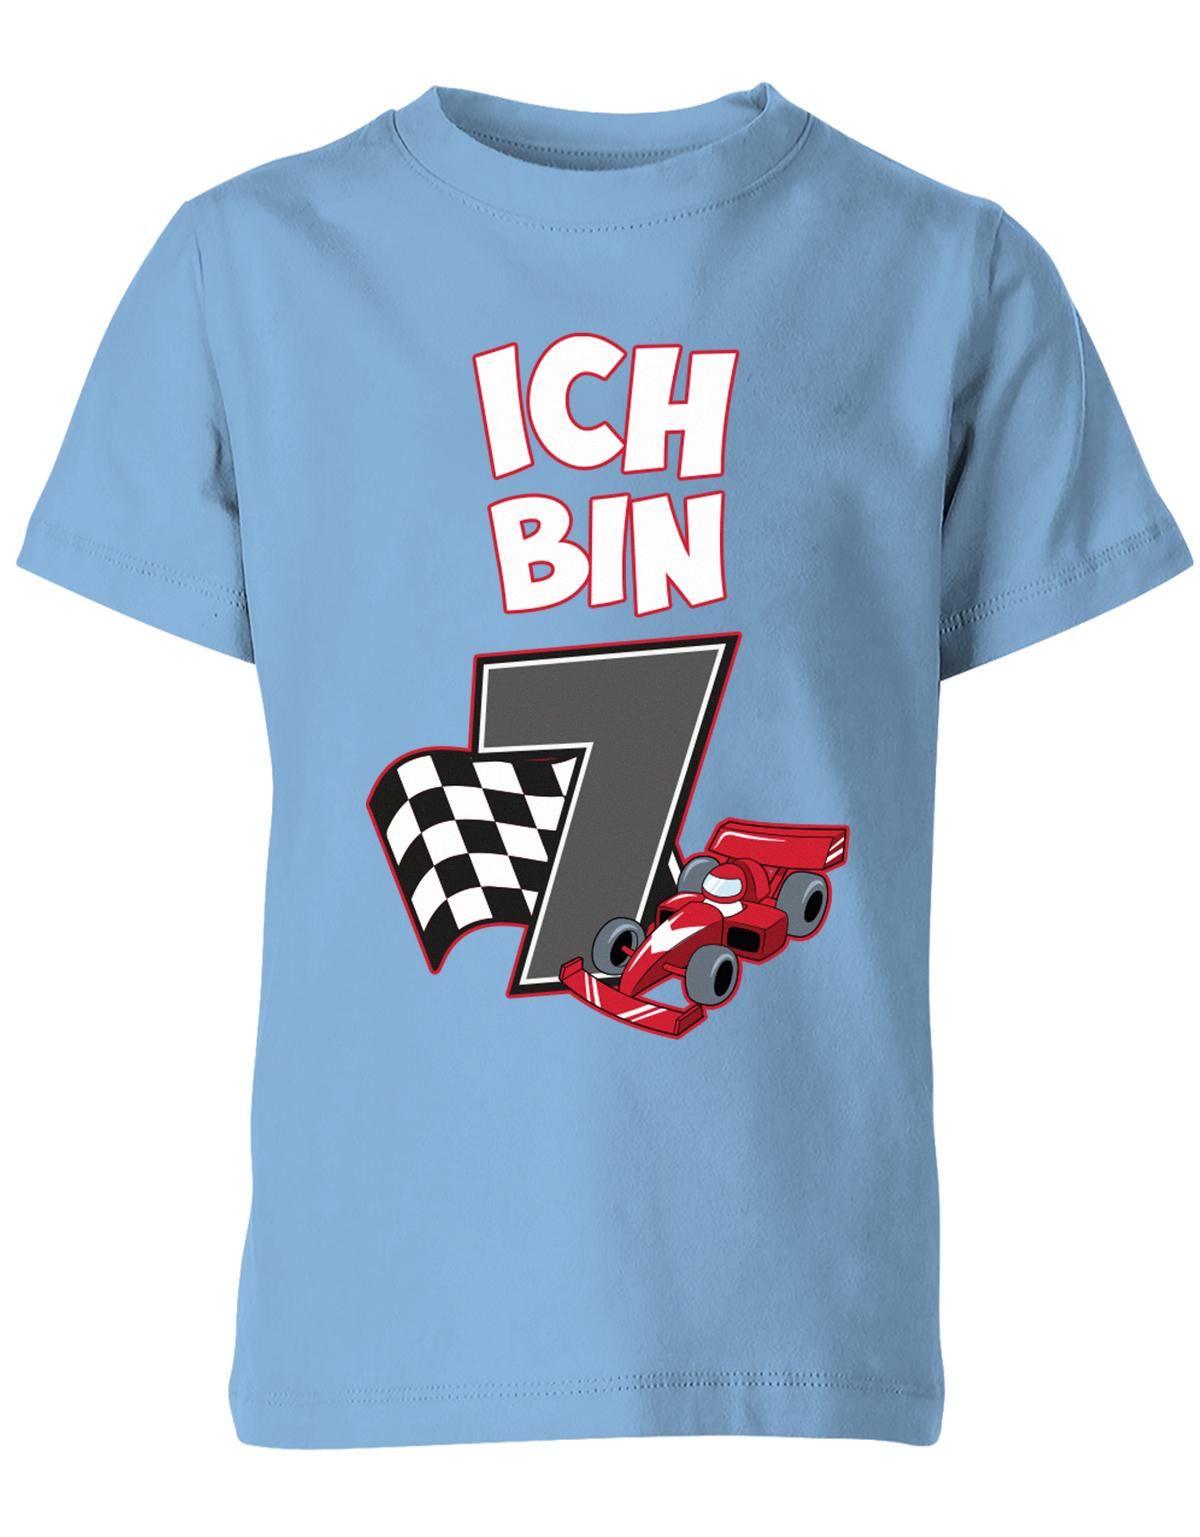 ich-bin-7-autorennen-rennwagen-geburtstag-rennfahrer-kinder-shirt-hellblau